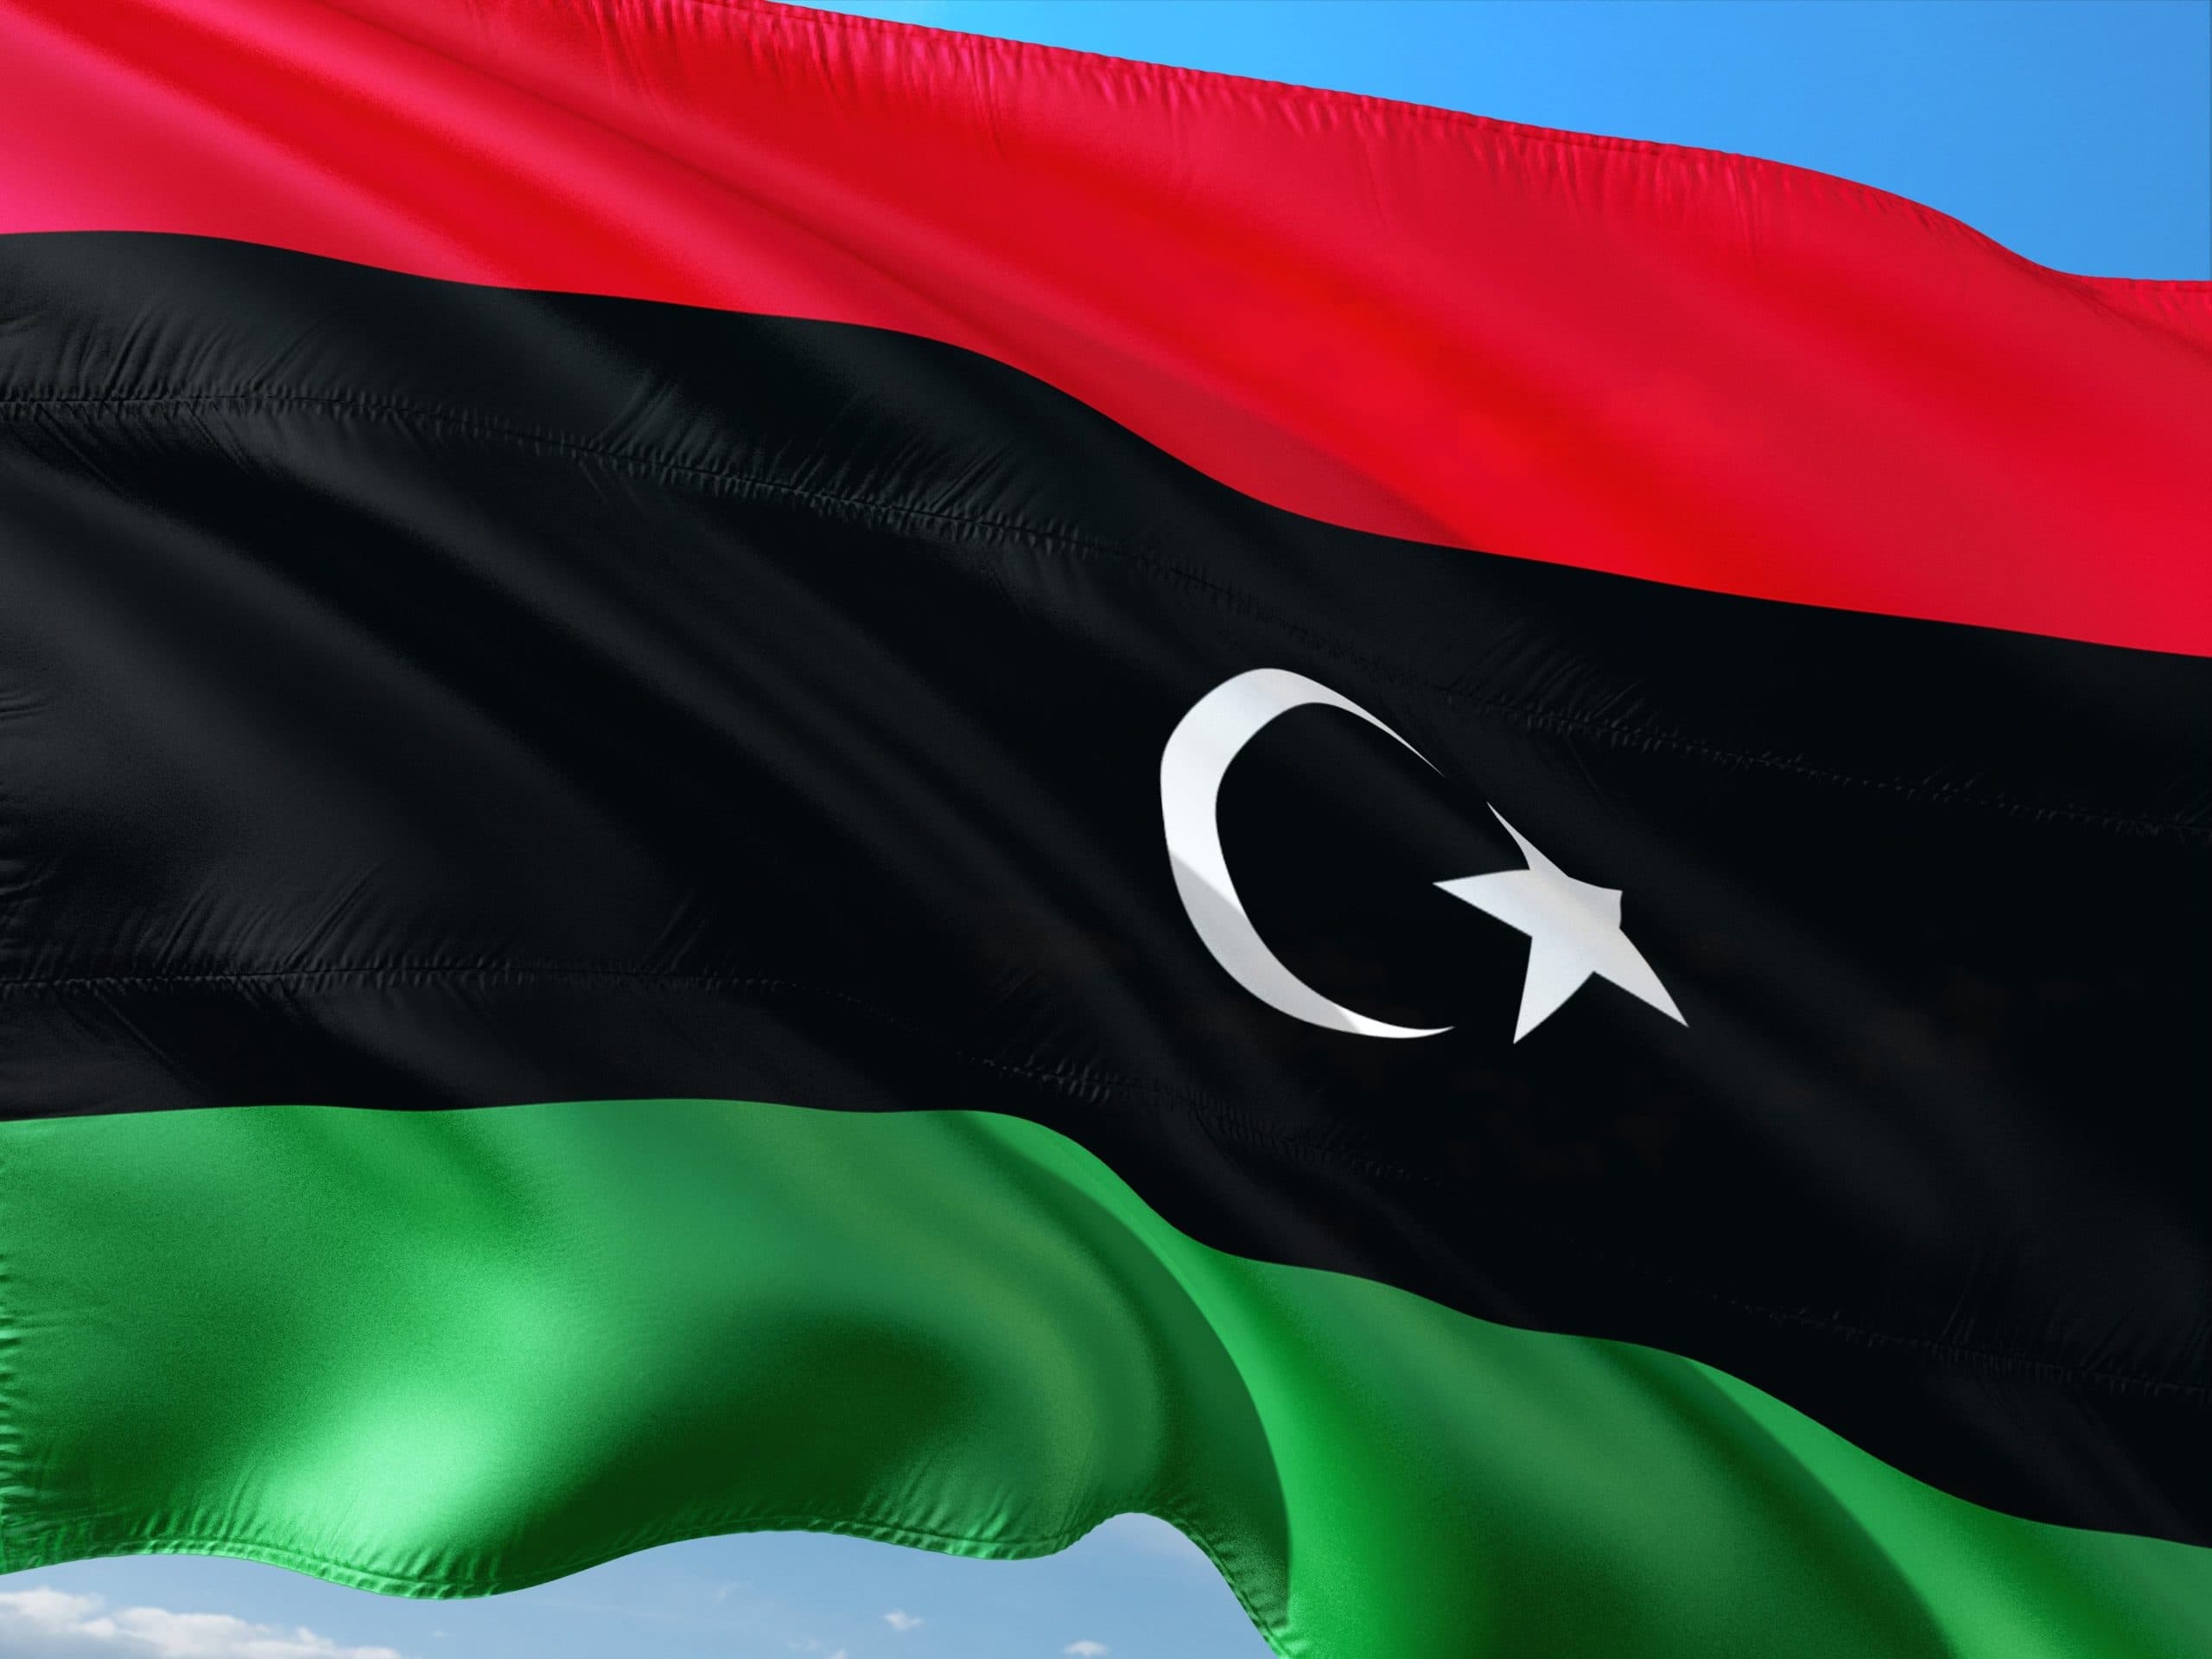 La Turchia in Libia punta tutto su al-Sarraj